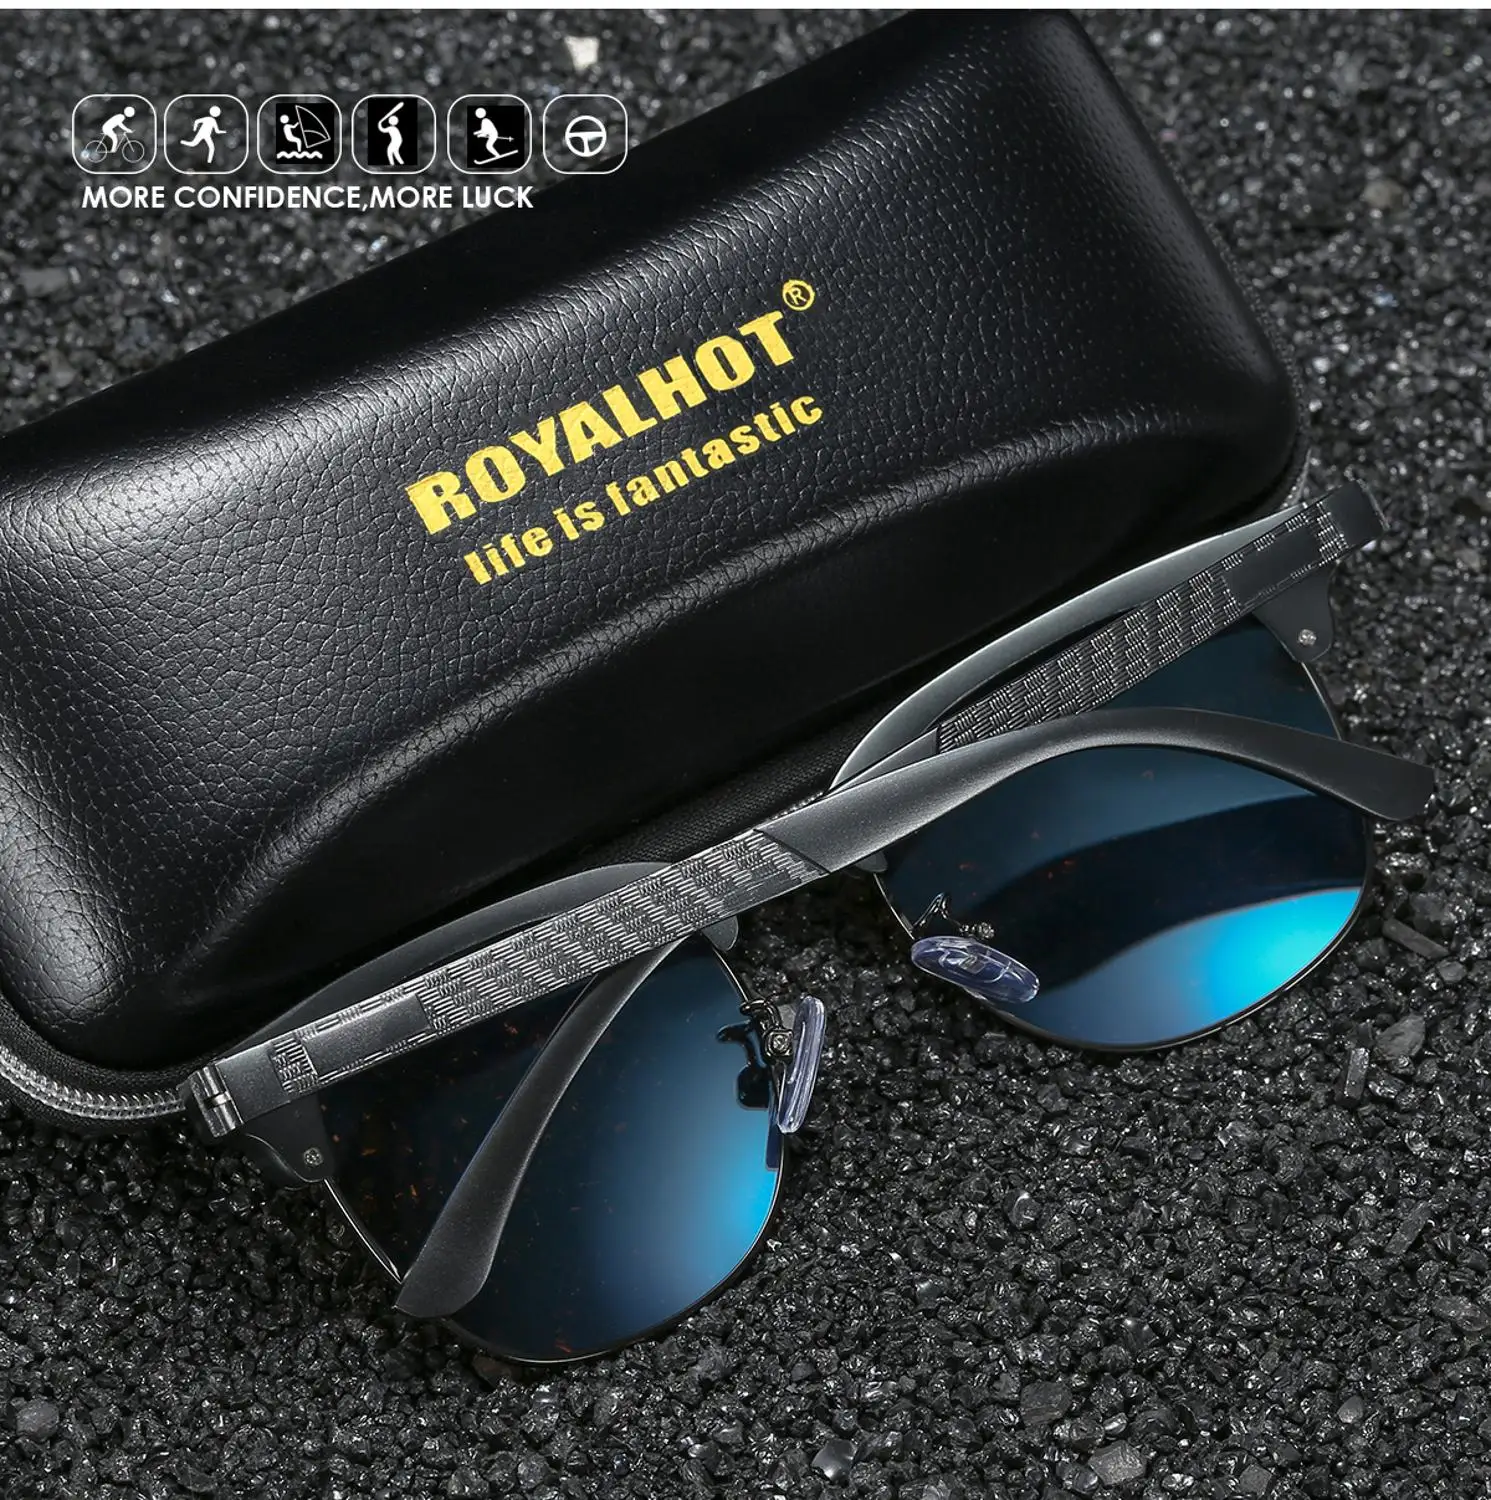 RoyalHot, мужские, женские, поляризационные солнцезащитные очки, алюминий, магний, полуоправа, очки для вождения, солнцезащитные очки, очки, мужские, 90089